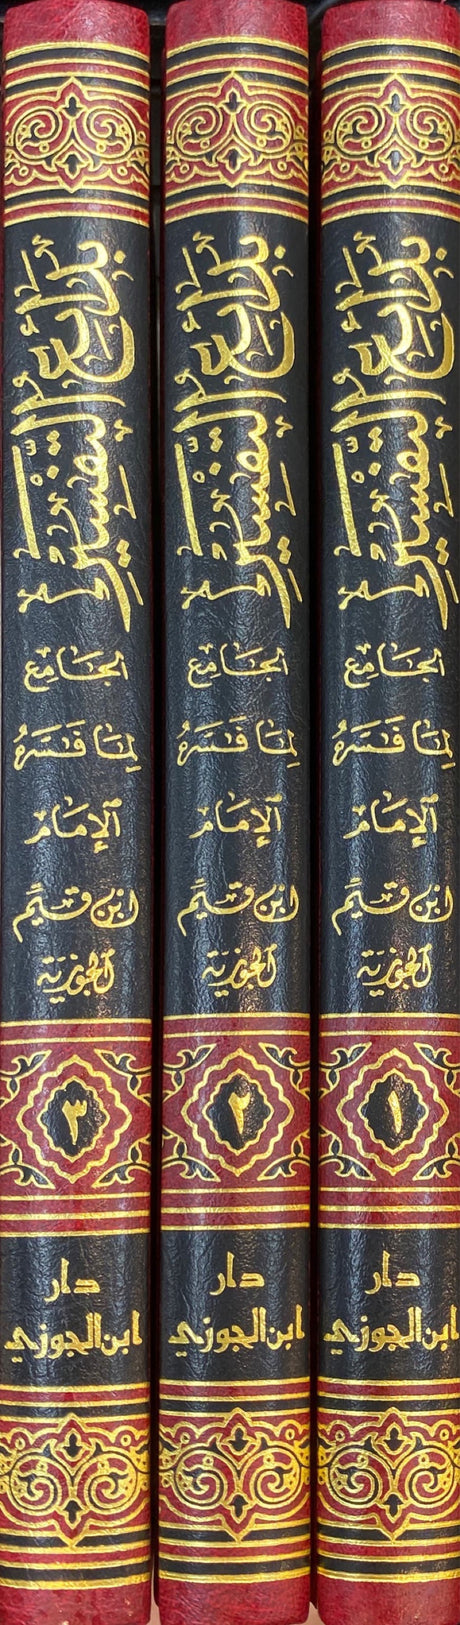 بدائع التفسير لابن القيم 3/1   Badait Tafsir Li Ibn Al Qayyim (3 Volume Set)